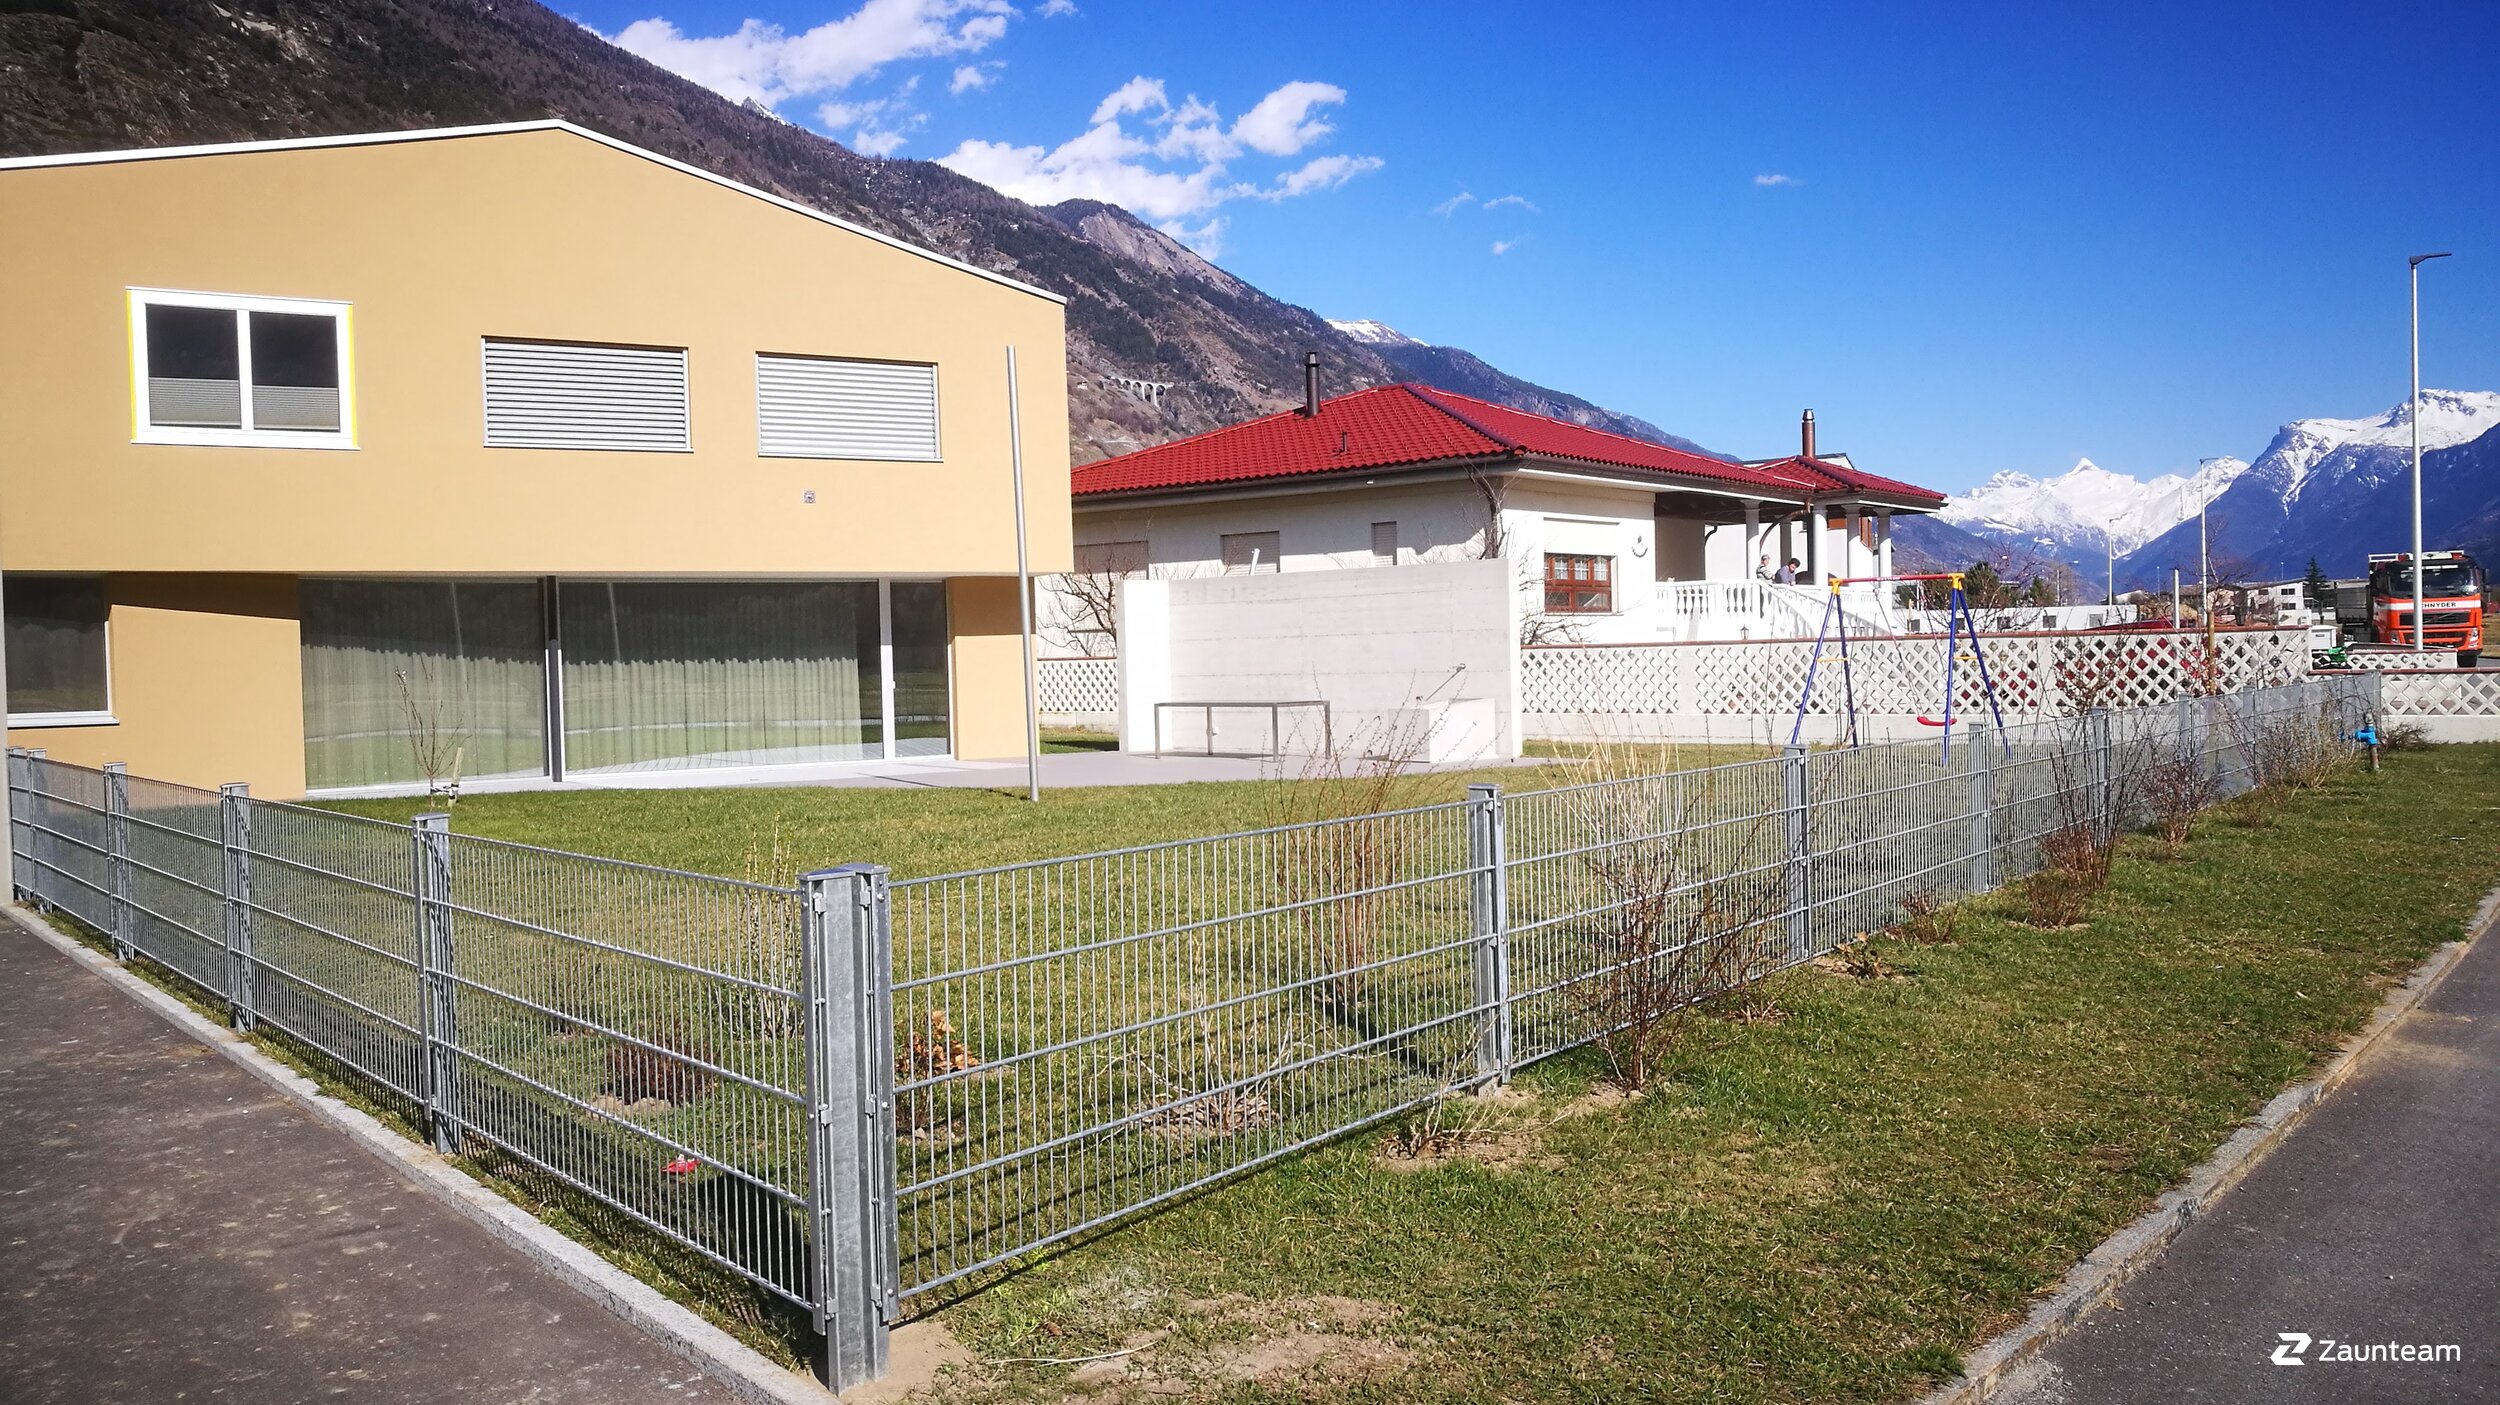 Clôture en panneau double fil de 2017 à 3945 Gampel Suisse de Zaunteam Wallis / Swissclôture Valais.